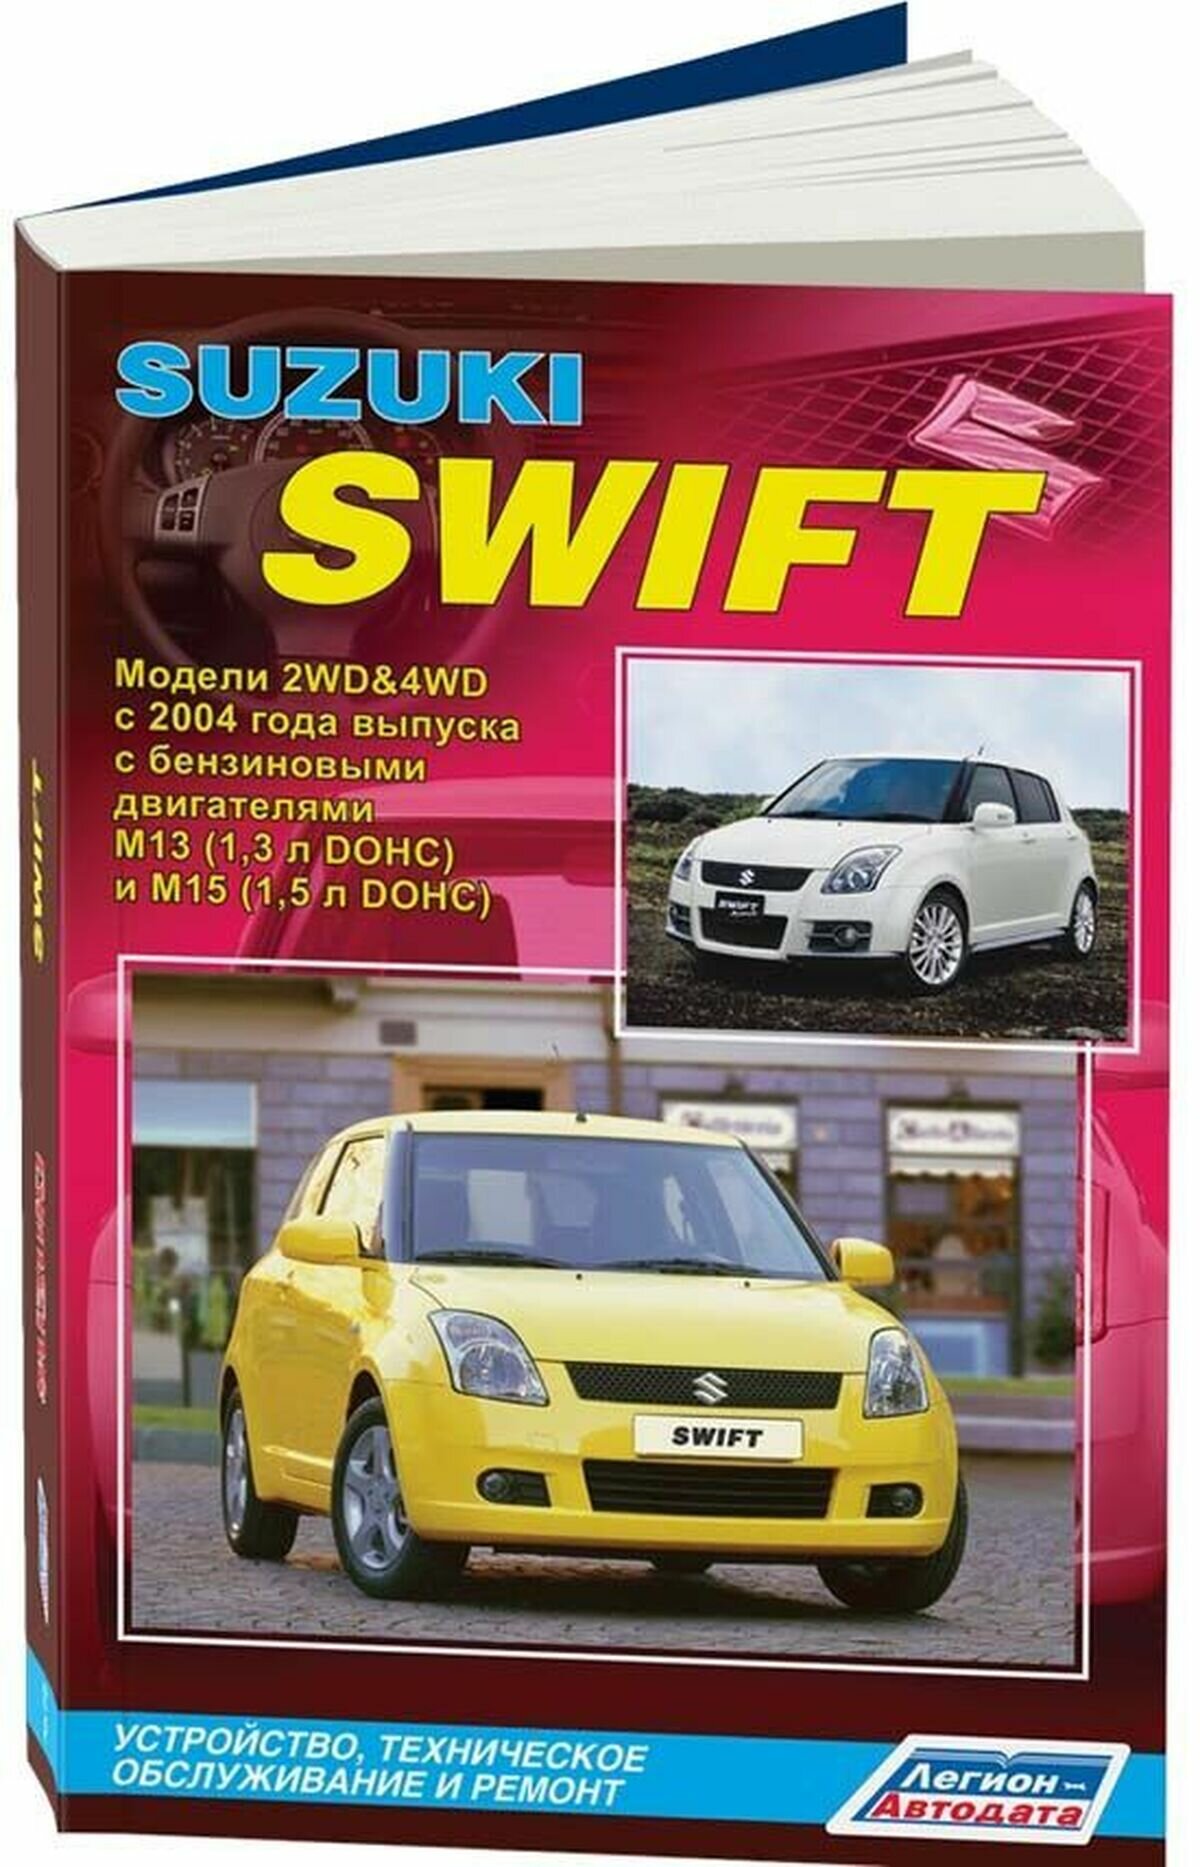 Автокнига: руководство / инструкция по ремонту и эксплуатации SUZUKI SWIFT (сузуки свифт) бензин с 2004 года выпуска, 978-5-88850-394-2, издательство Легион-Aвтодата